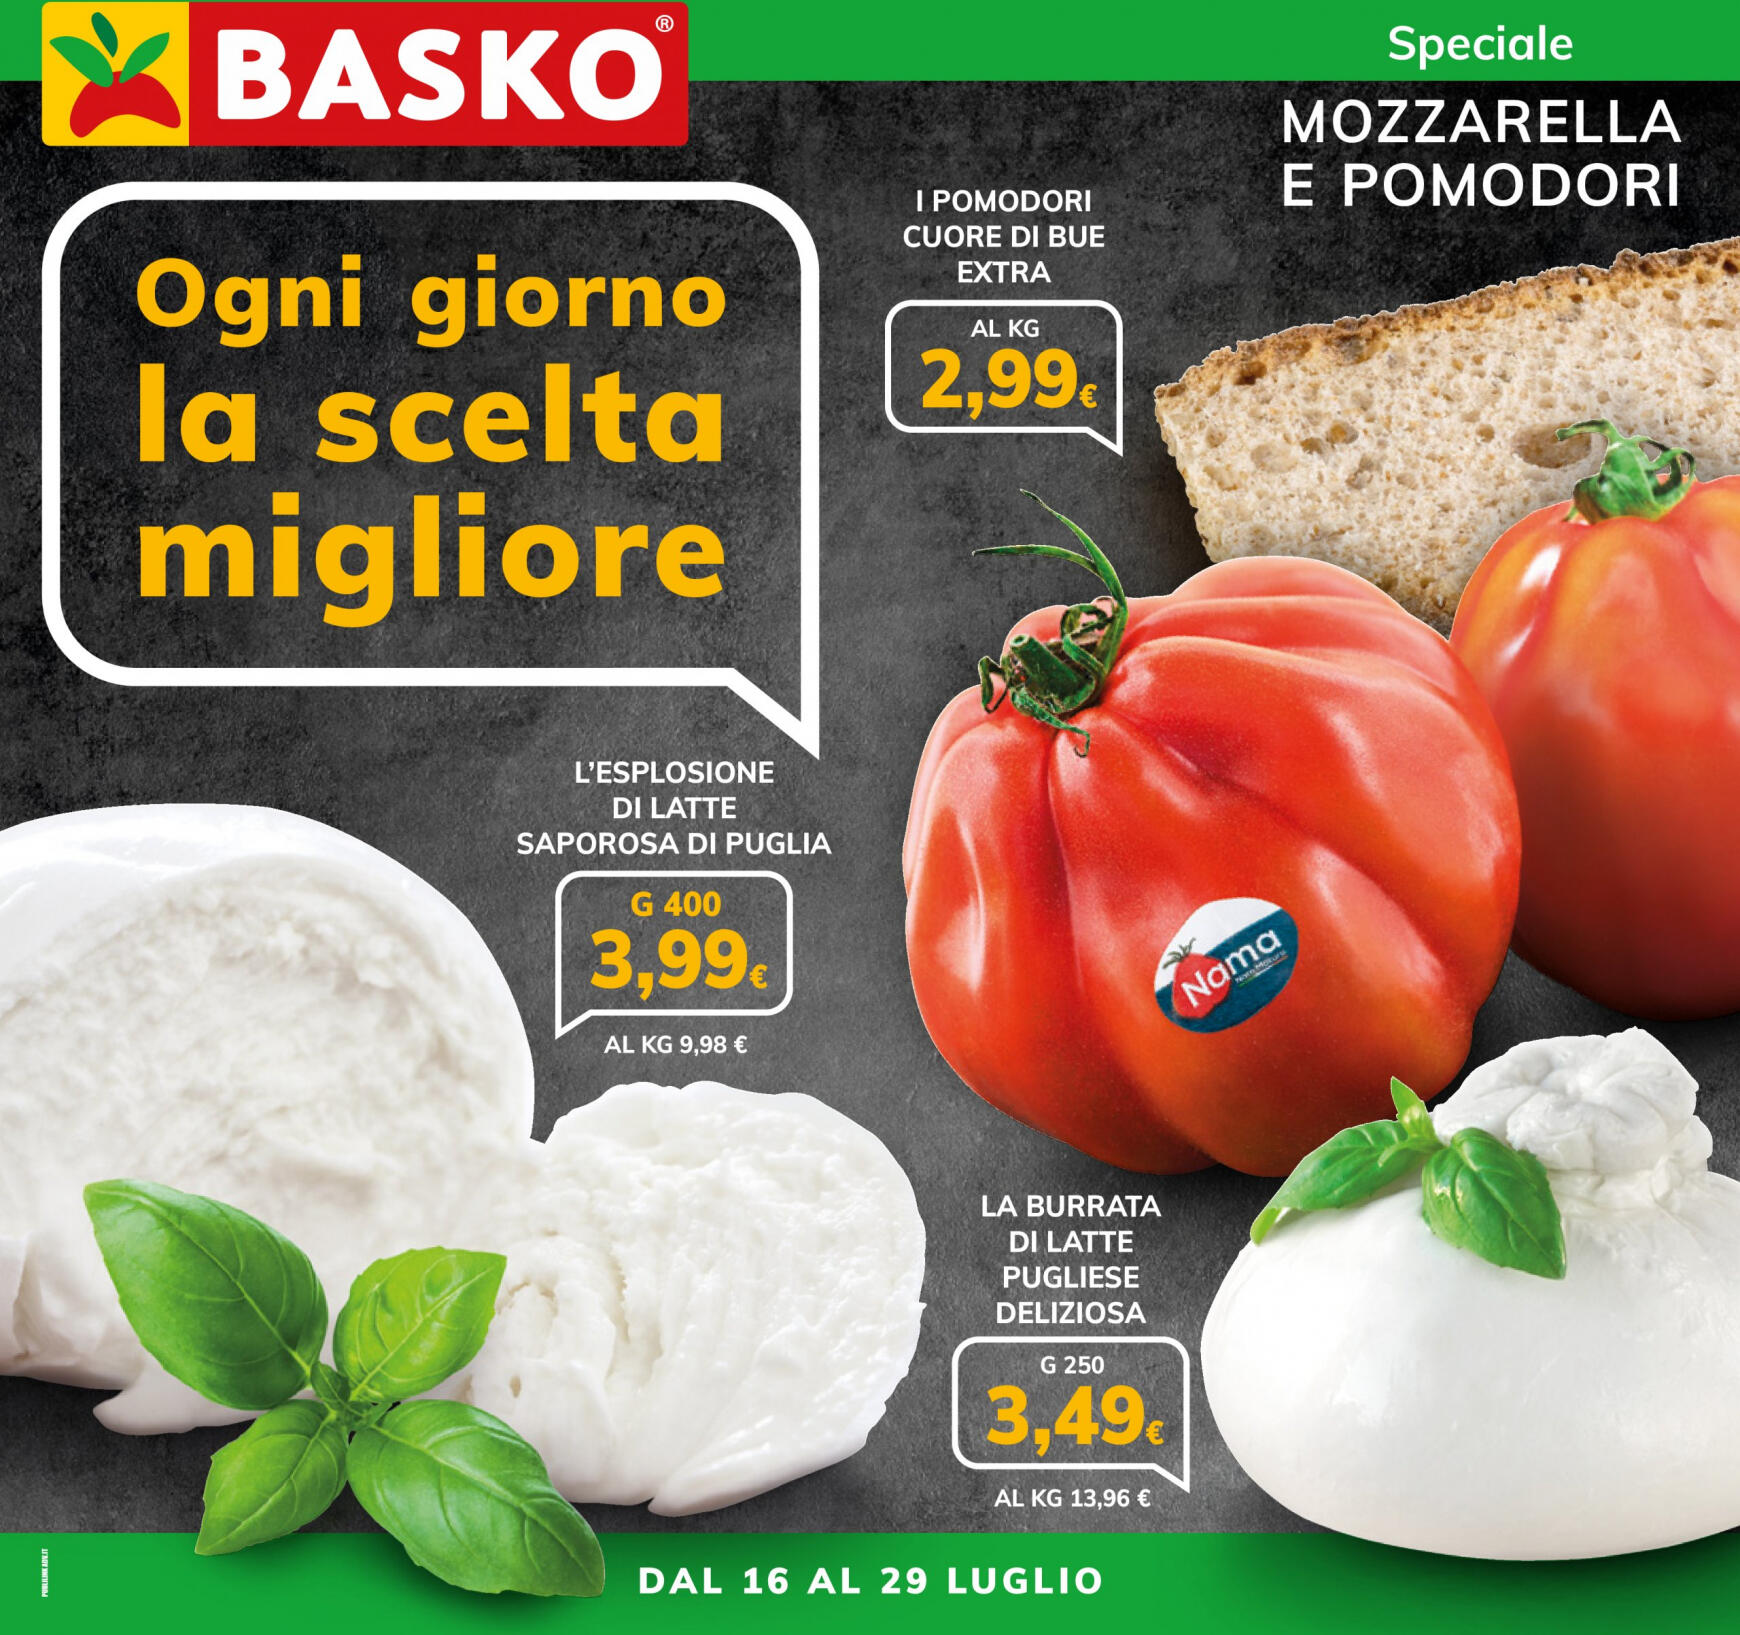 basko - Nuovo volantino Basko - Speciale Mozzarella e Pomodori 16.07. - 29.07.